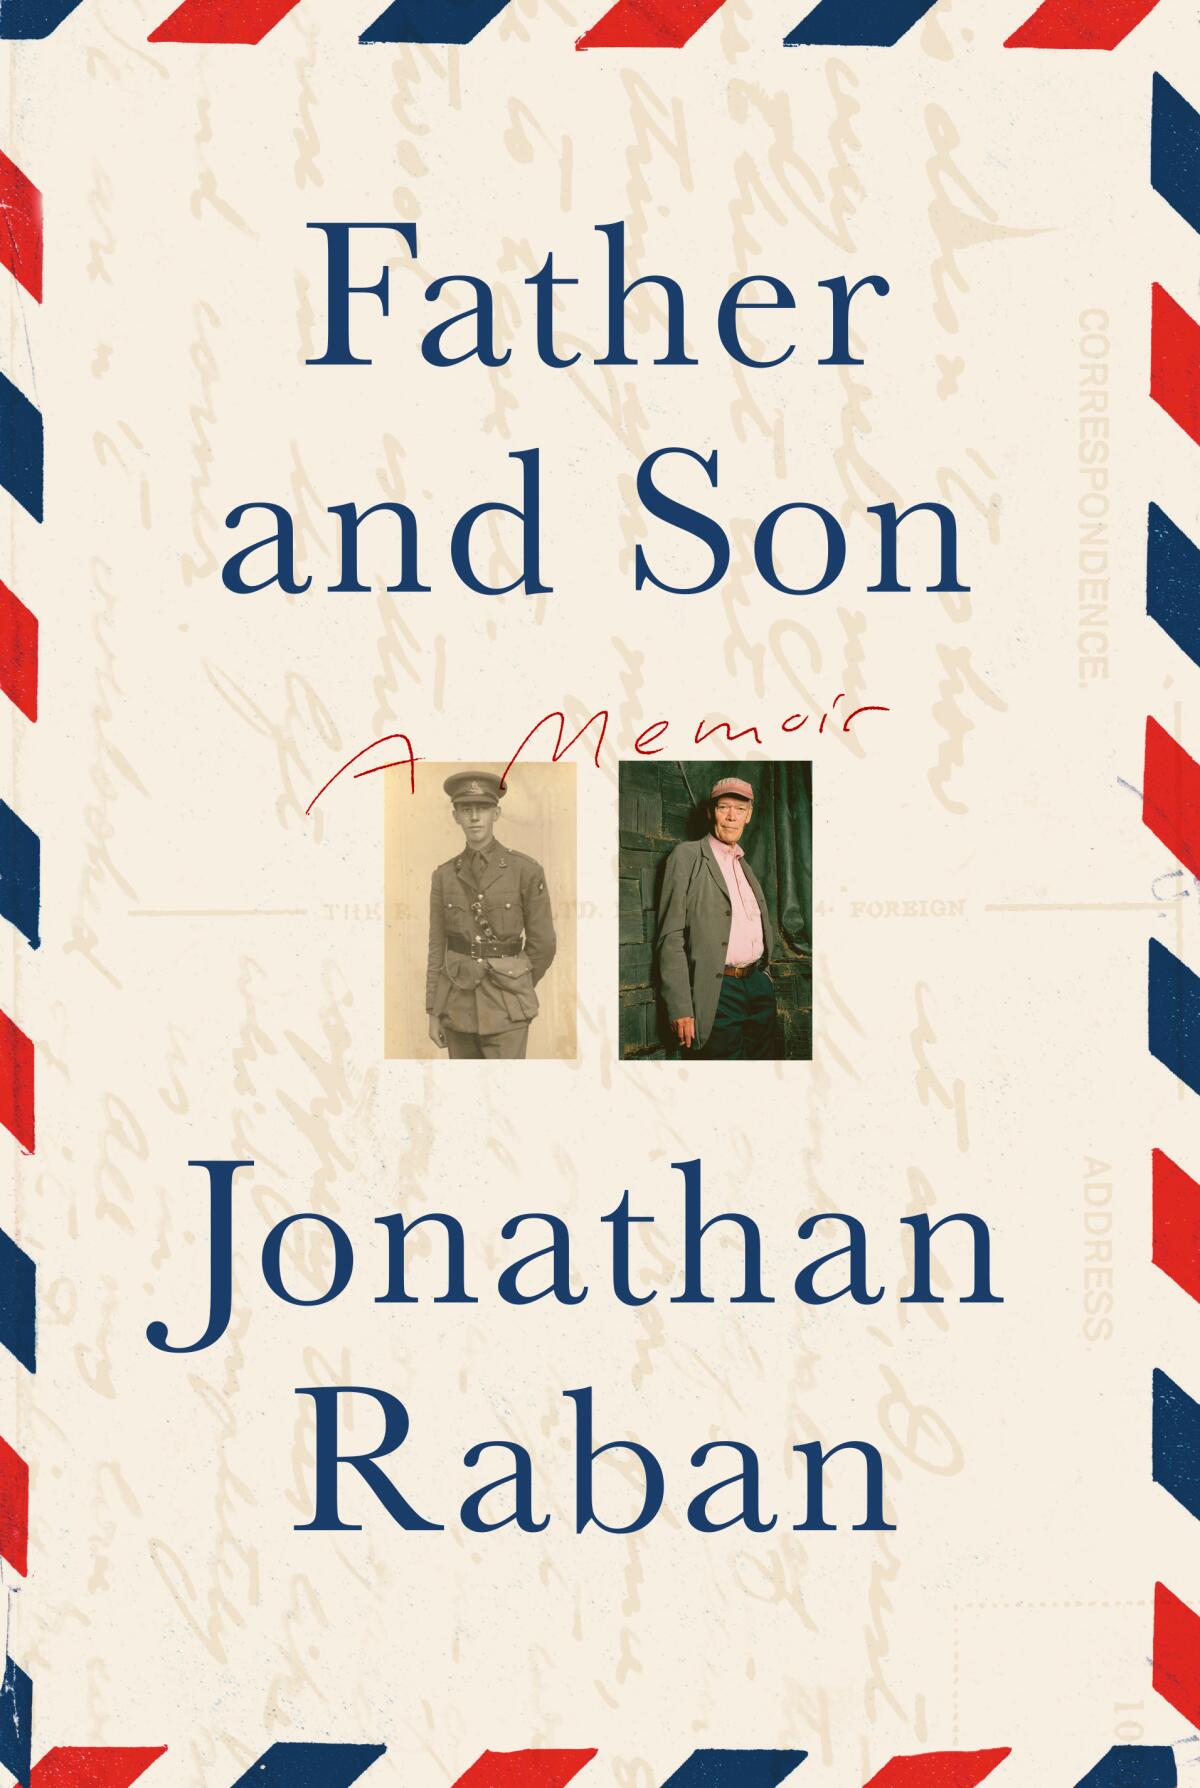 "Vater und Sohn," von Jonathan Raban